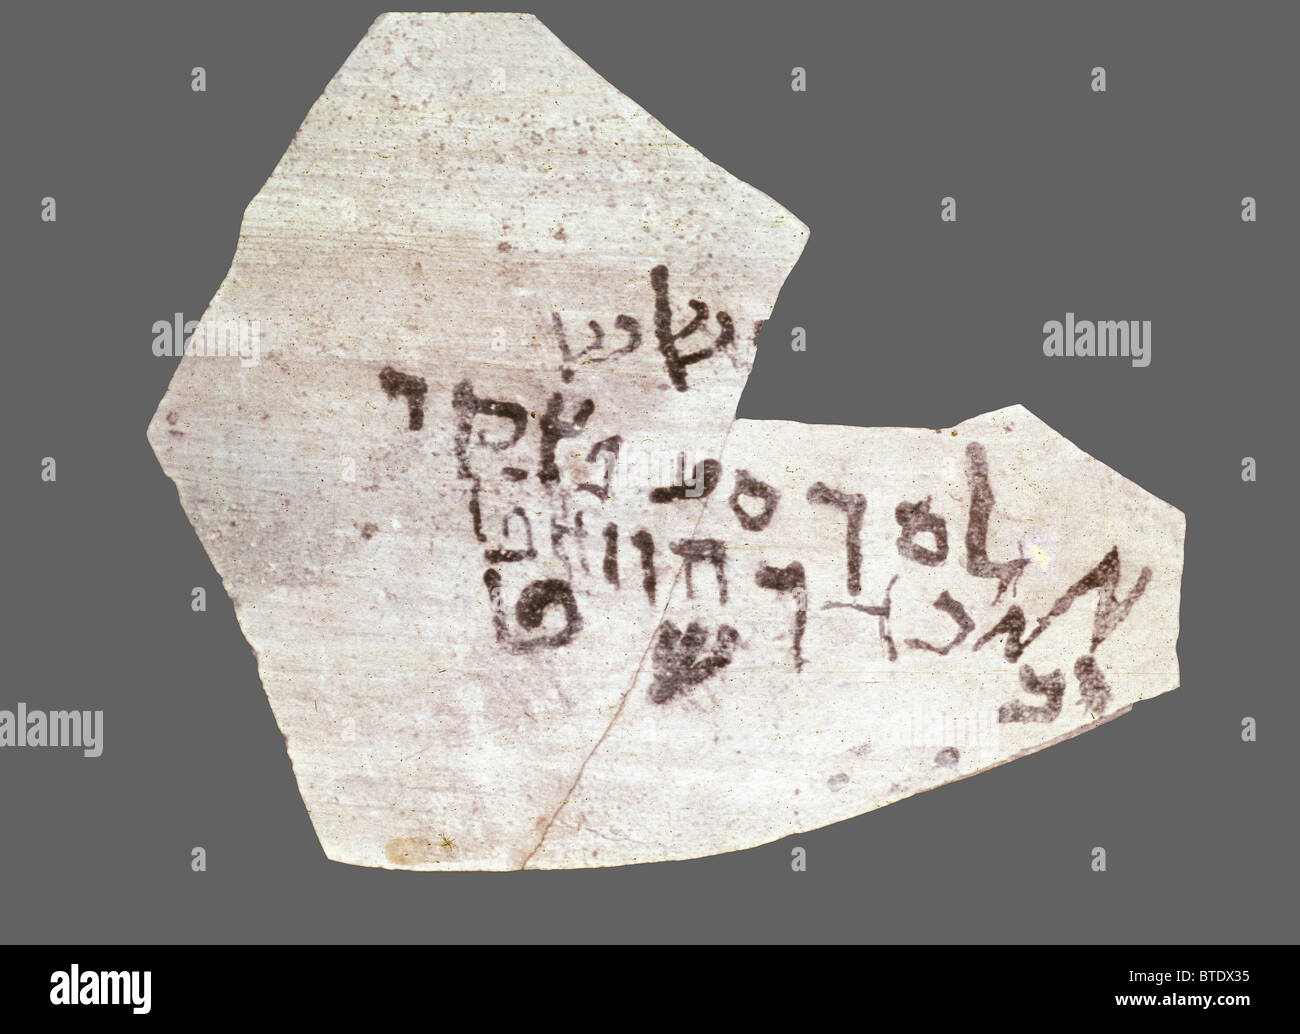 5364. Ostraca trovata nel Qumran dating da 1st. C. BC. La scrittura è in piazza ebraico e contiene tutte le lettere del Foto Stock